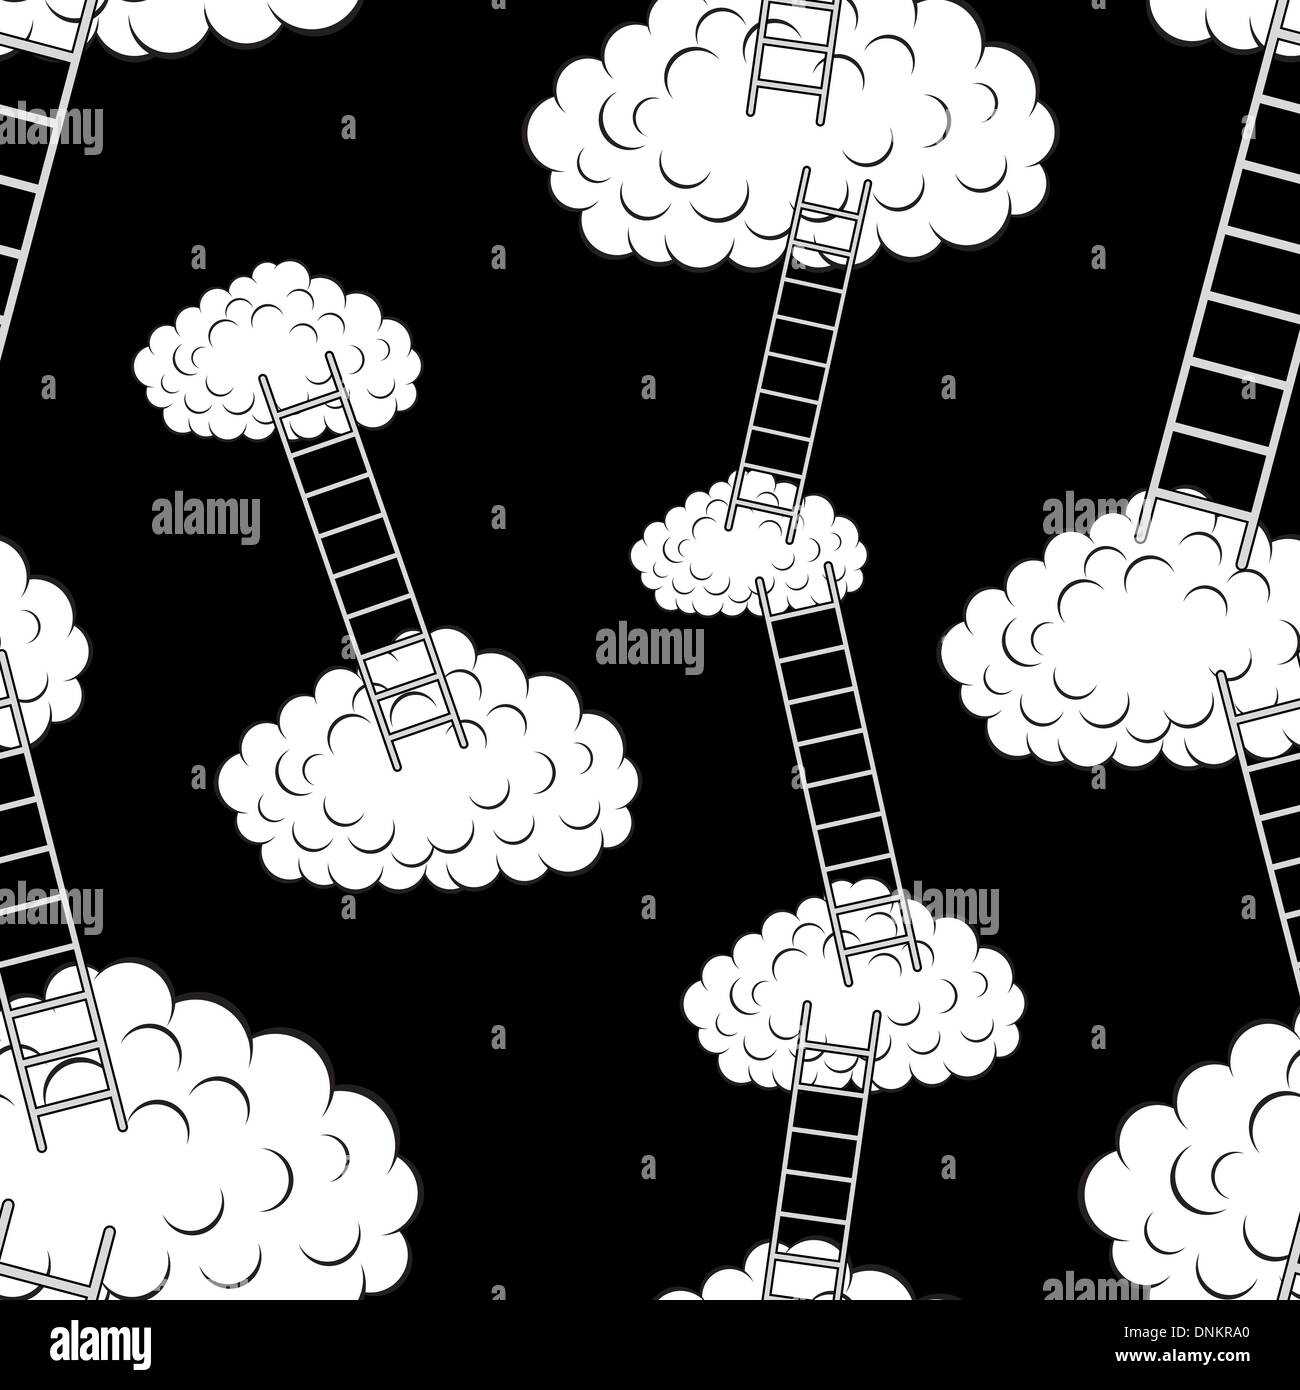 Wolken mit Treppen, nahtlose Tapete, Vektor-illustration Stock Vektor